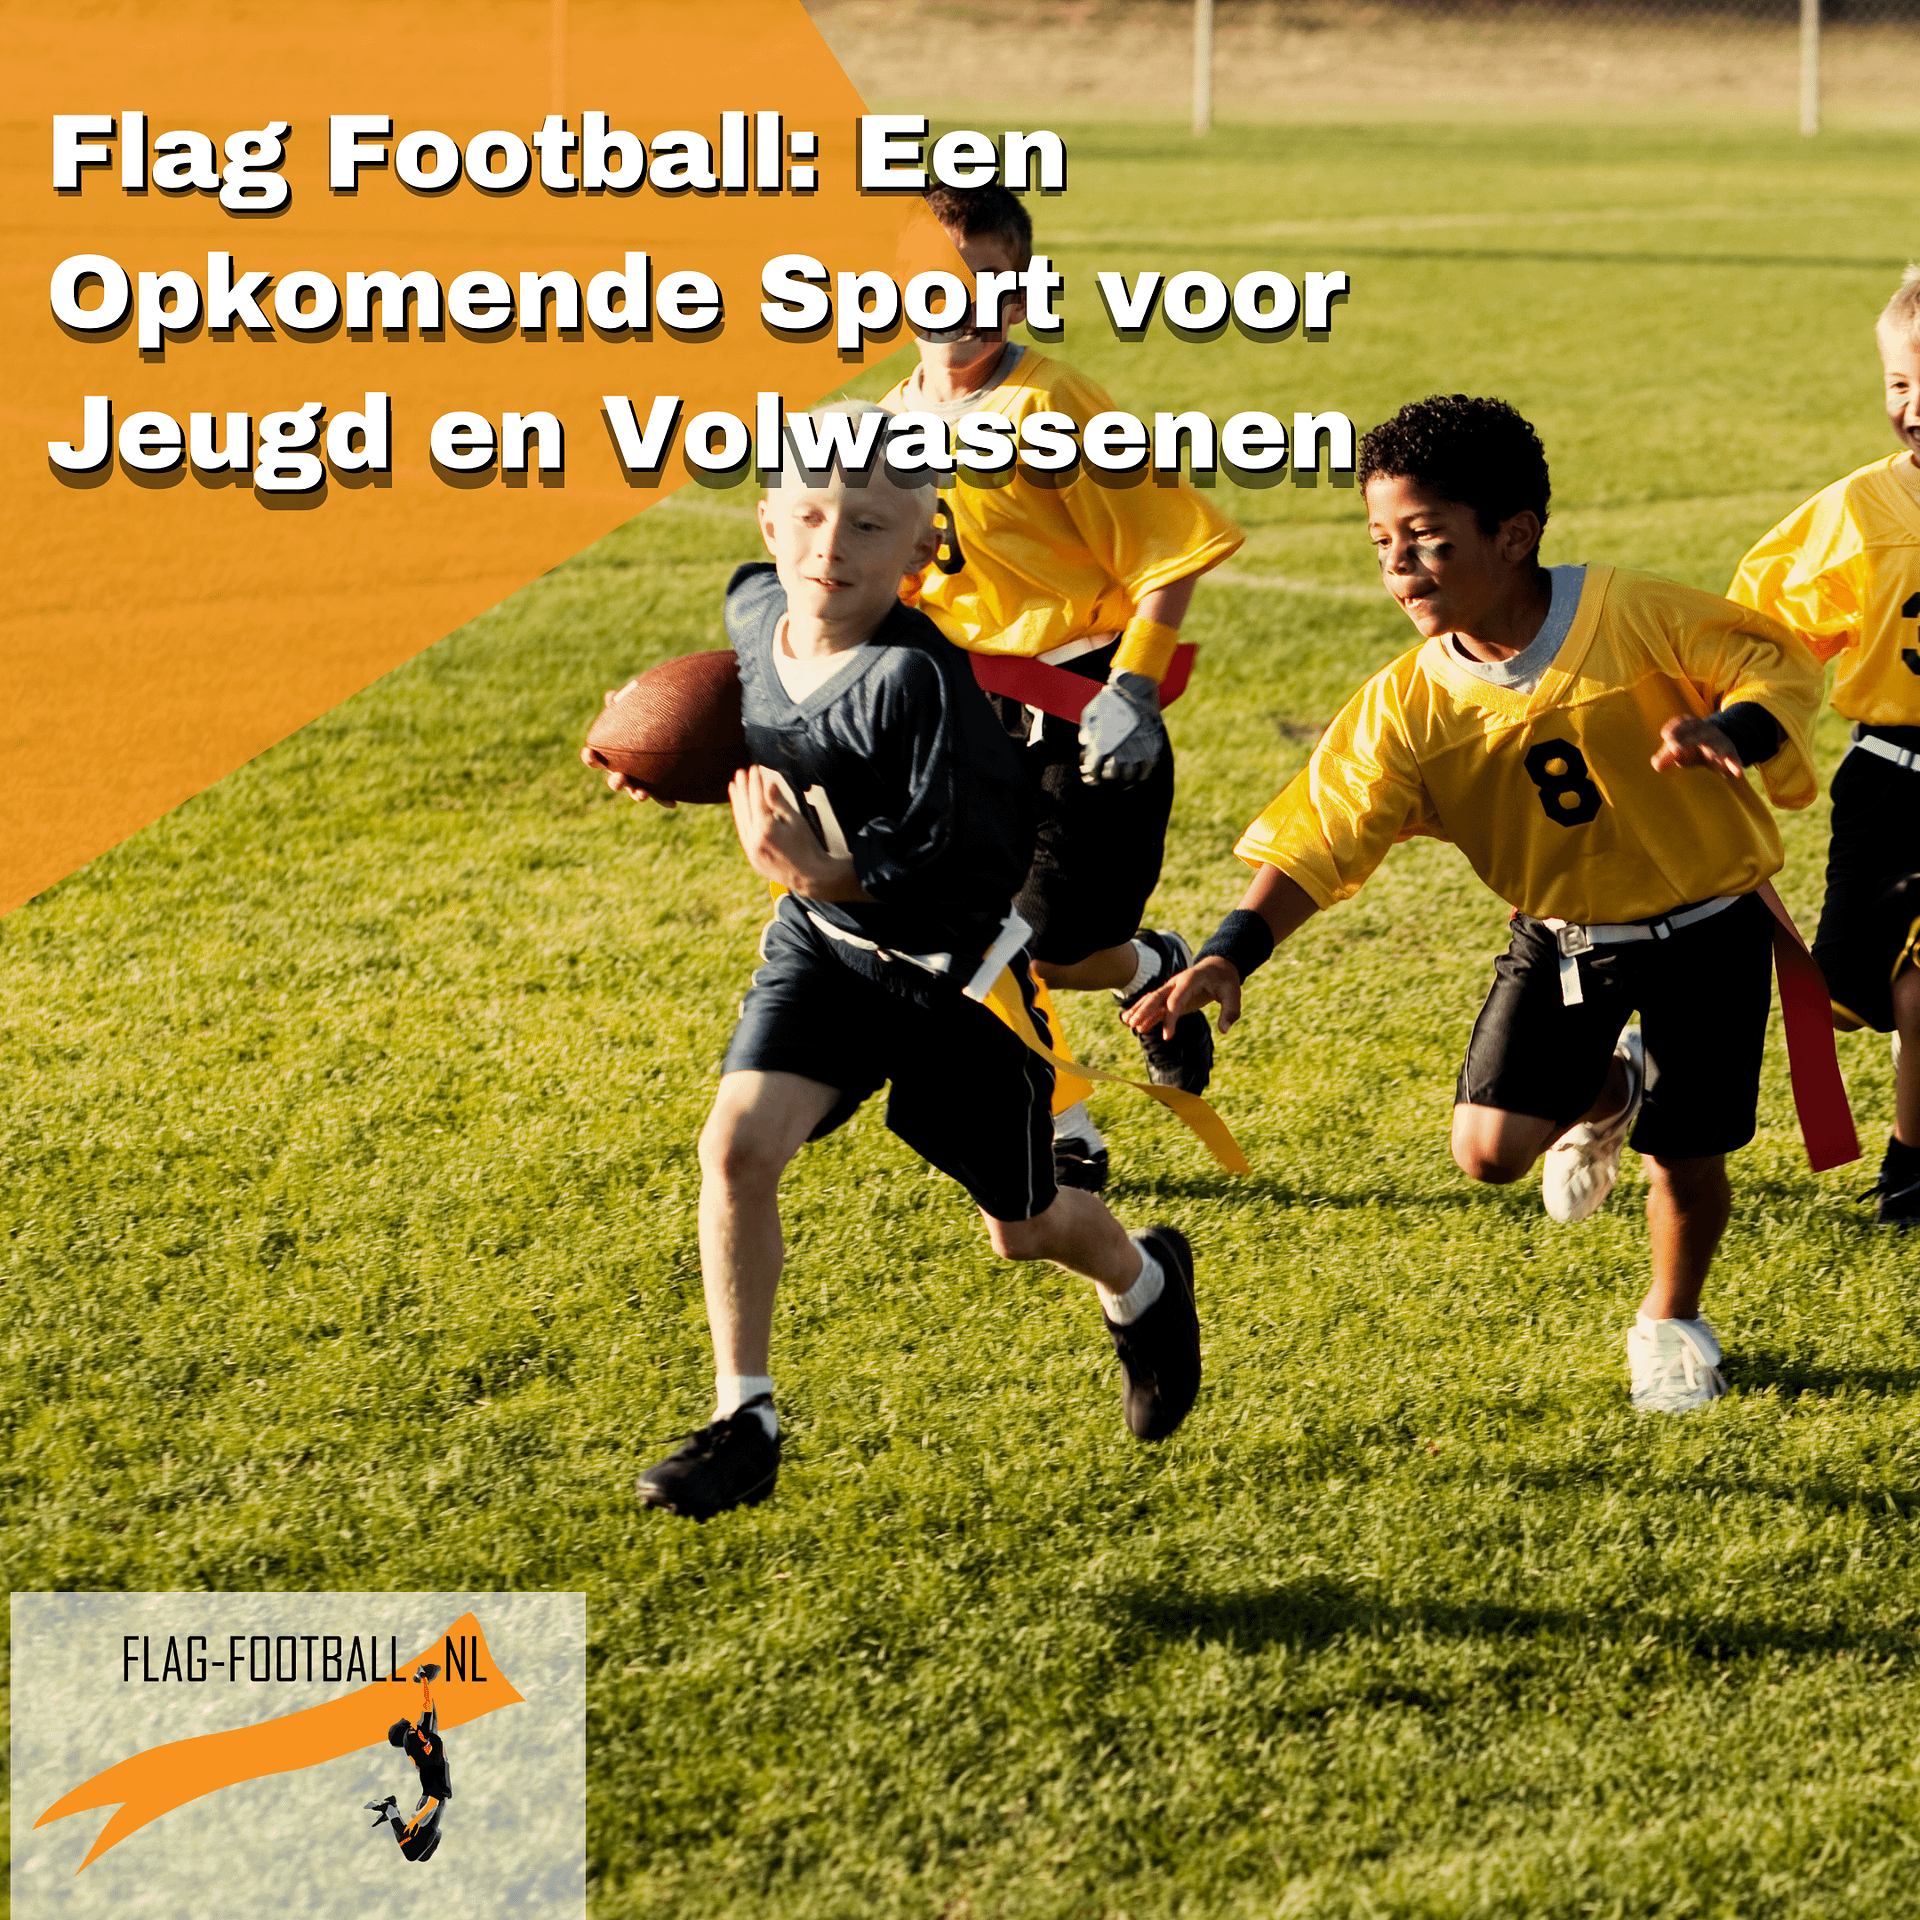 Kind Vermenigvuldiging Integreren Flag Football: Een opkomende sport voor Jeugd en Volwassenen -  Flag-Football.nl